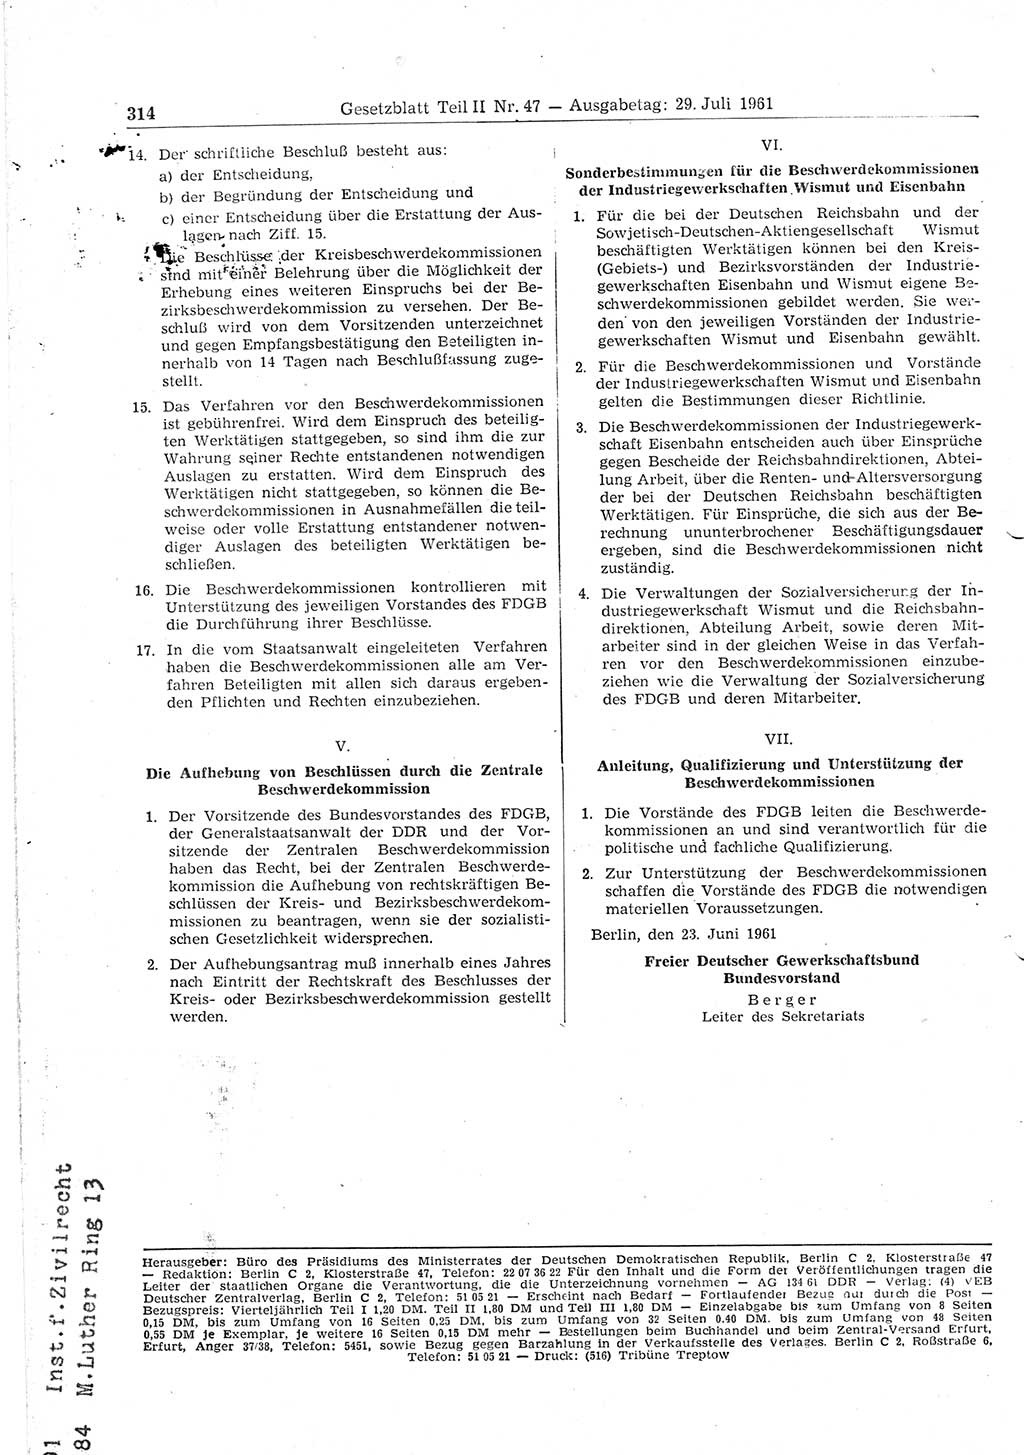 Gesetzblatt (GBl.) der Deutschen Demokratischen Republik (DDR) Teil ⅠⅠ 1961, Seite 314 (GBl. DDR ⅠⅠ 1961, S. 314)